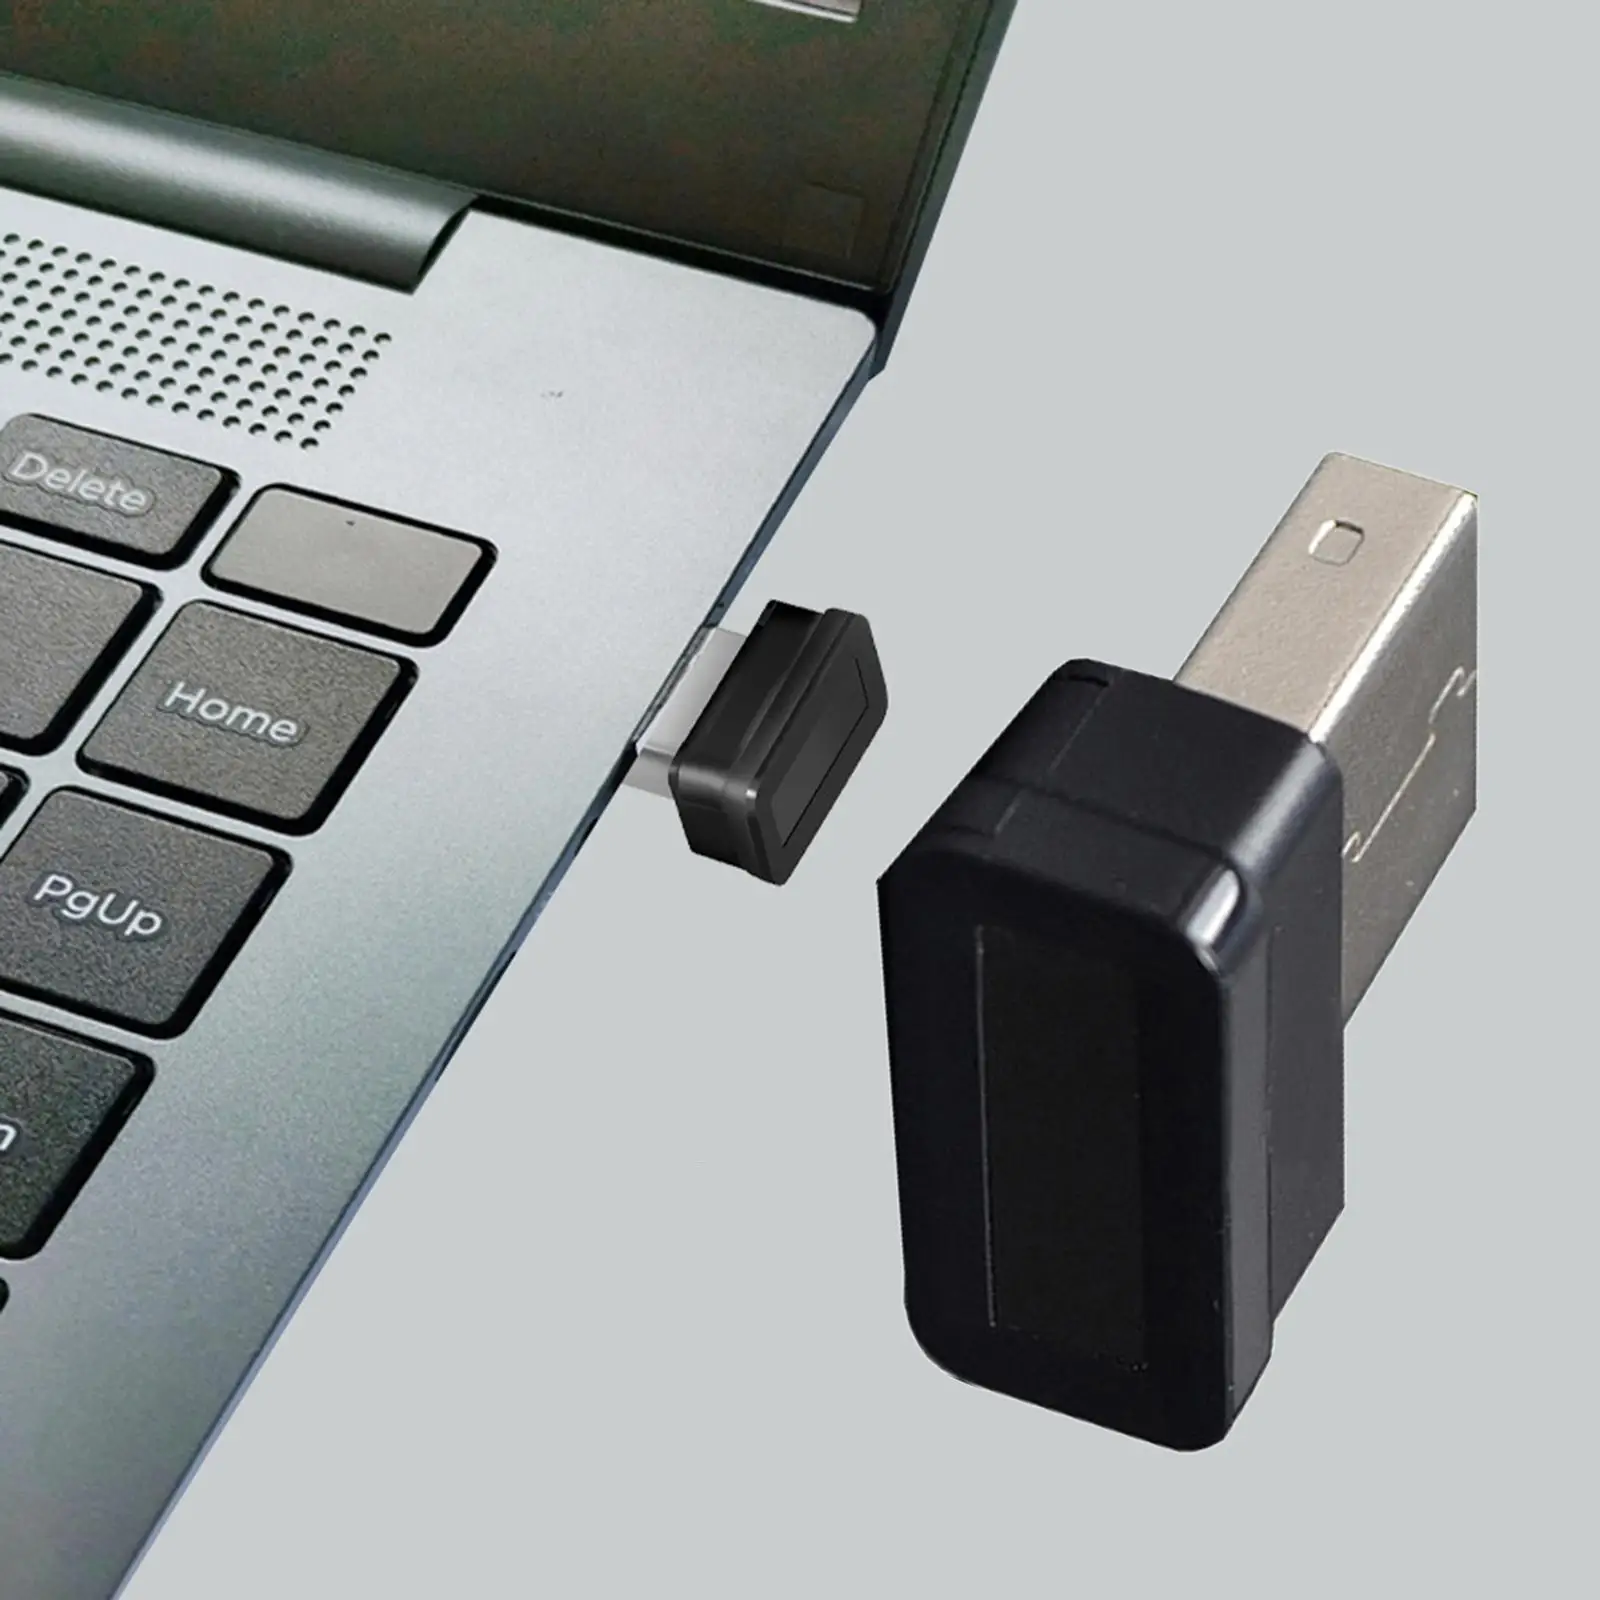 Portable USB Fingerprint Reader 360° Anti Spoofing Speedy Matching Fingerprint Scanner 10 sets of fingerpint use